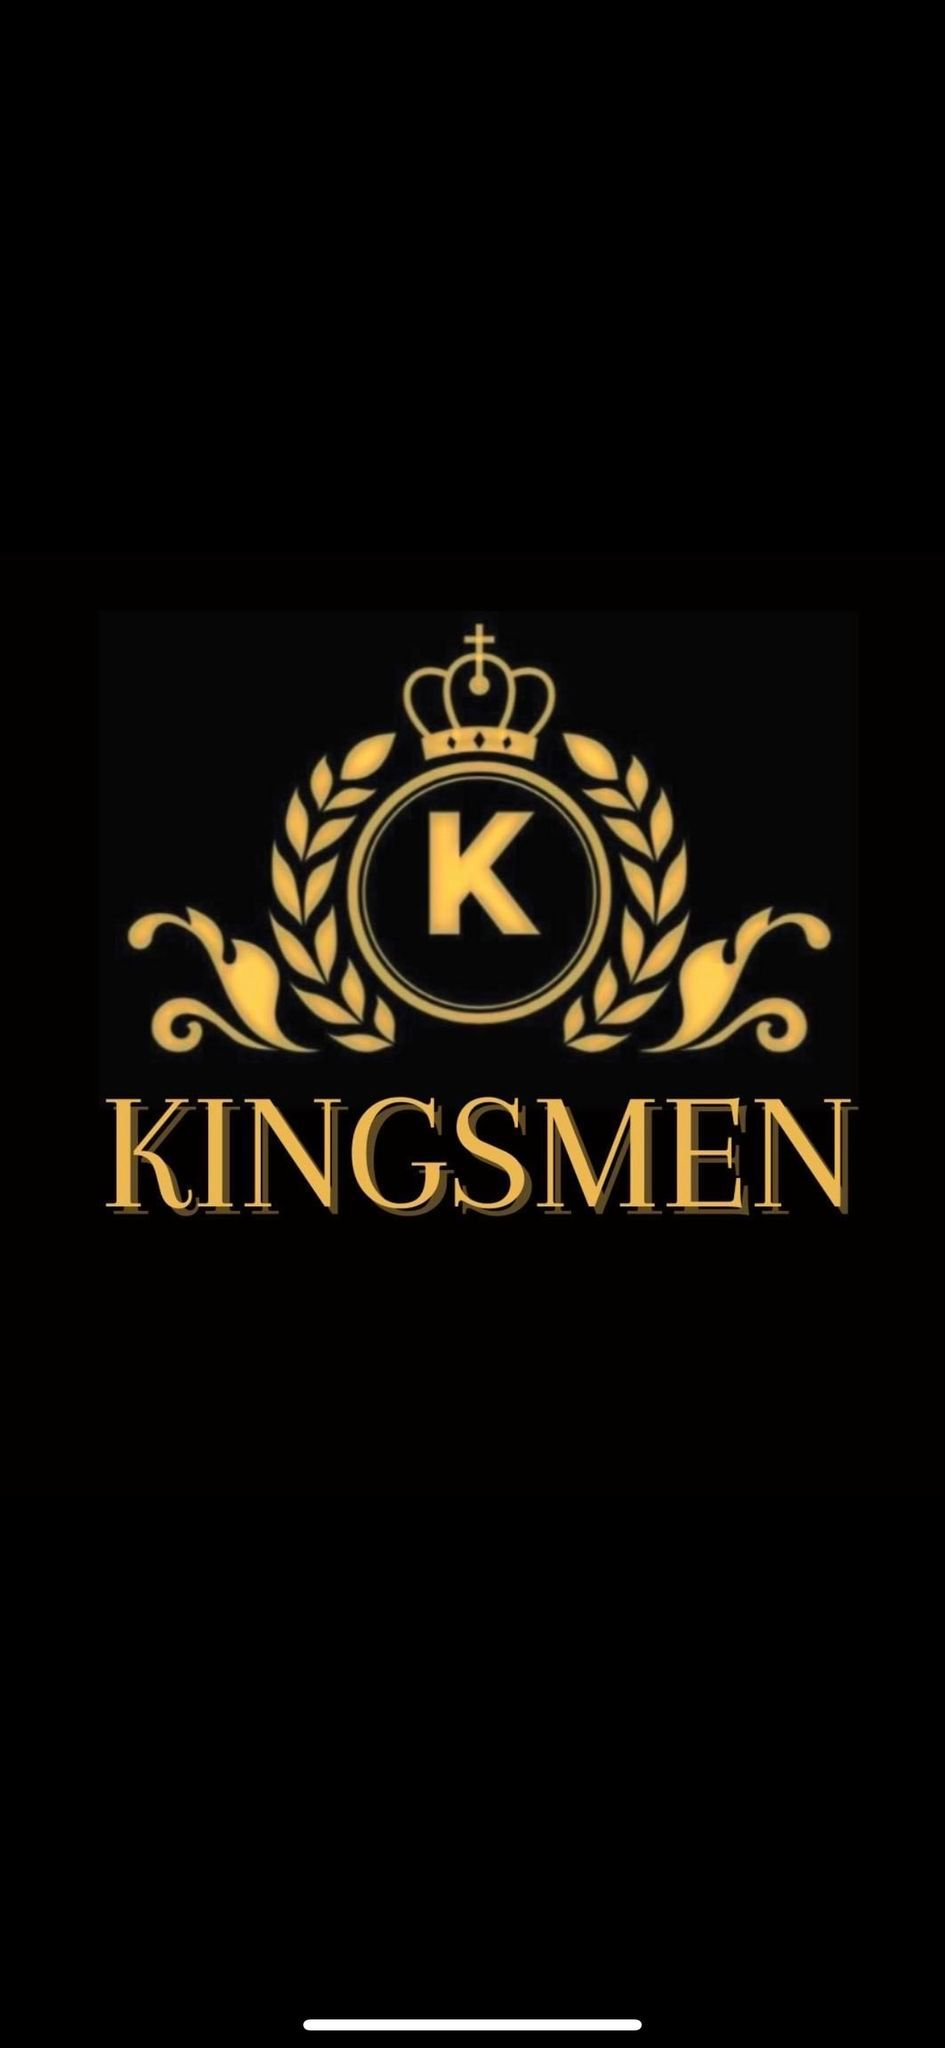 Kingsmen love band